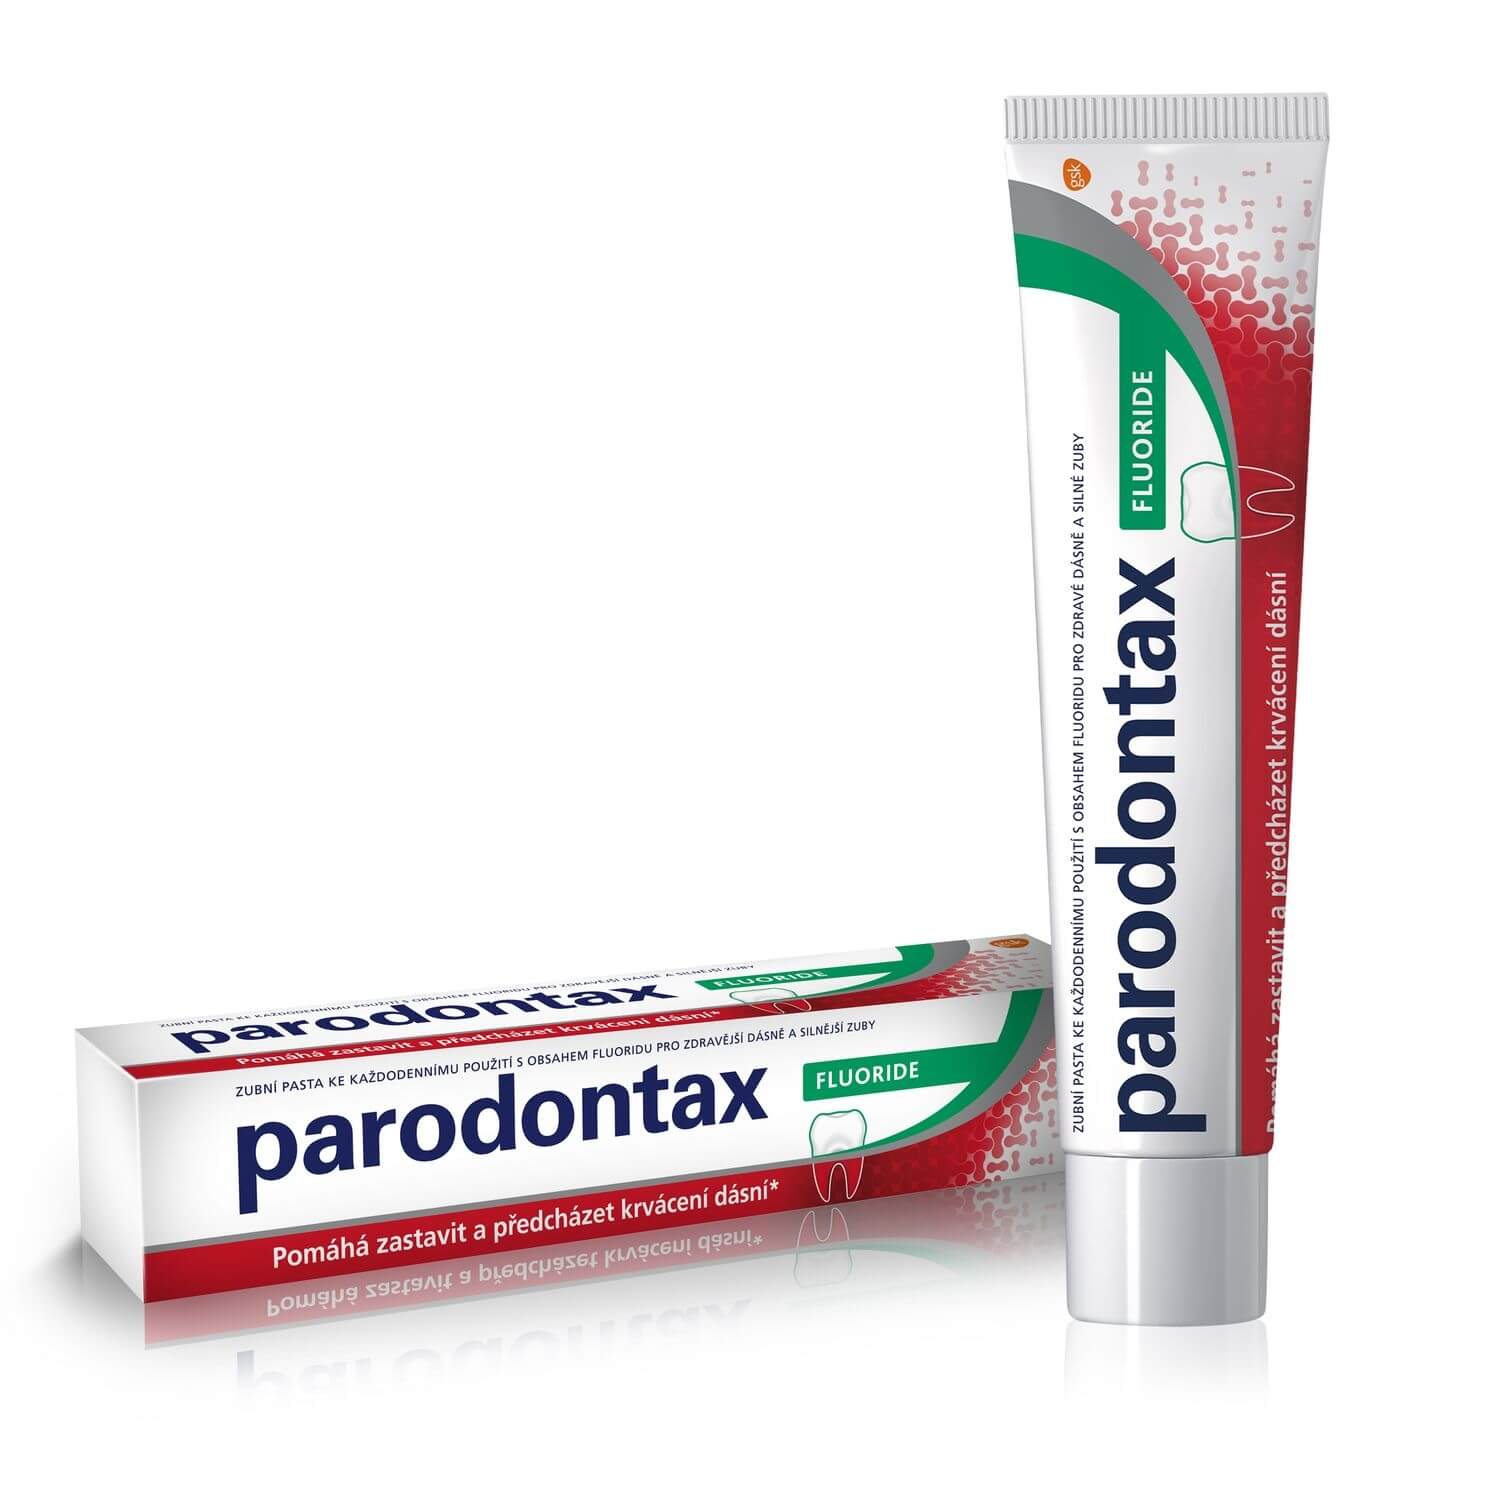 Parodontax Zubní pasta proti krvácení dásní Fluoride 100 ml